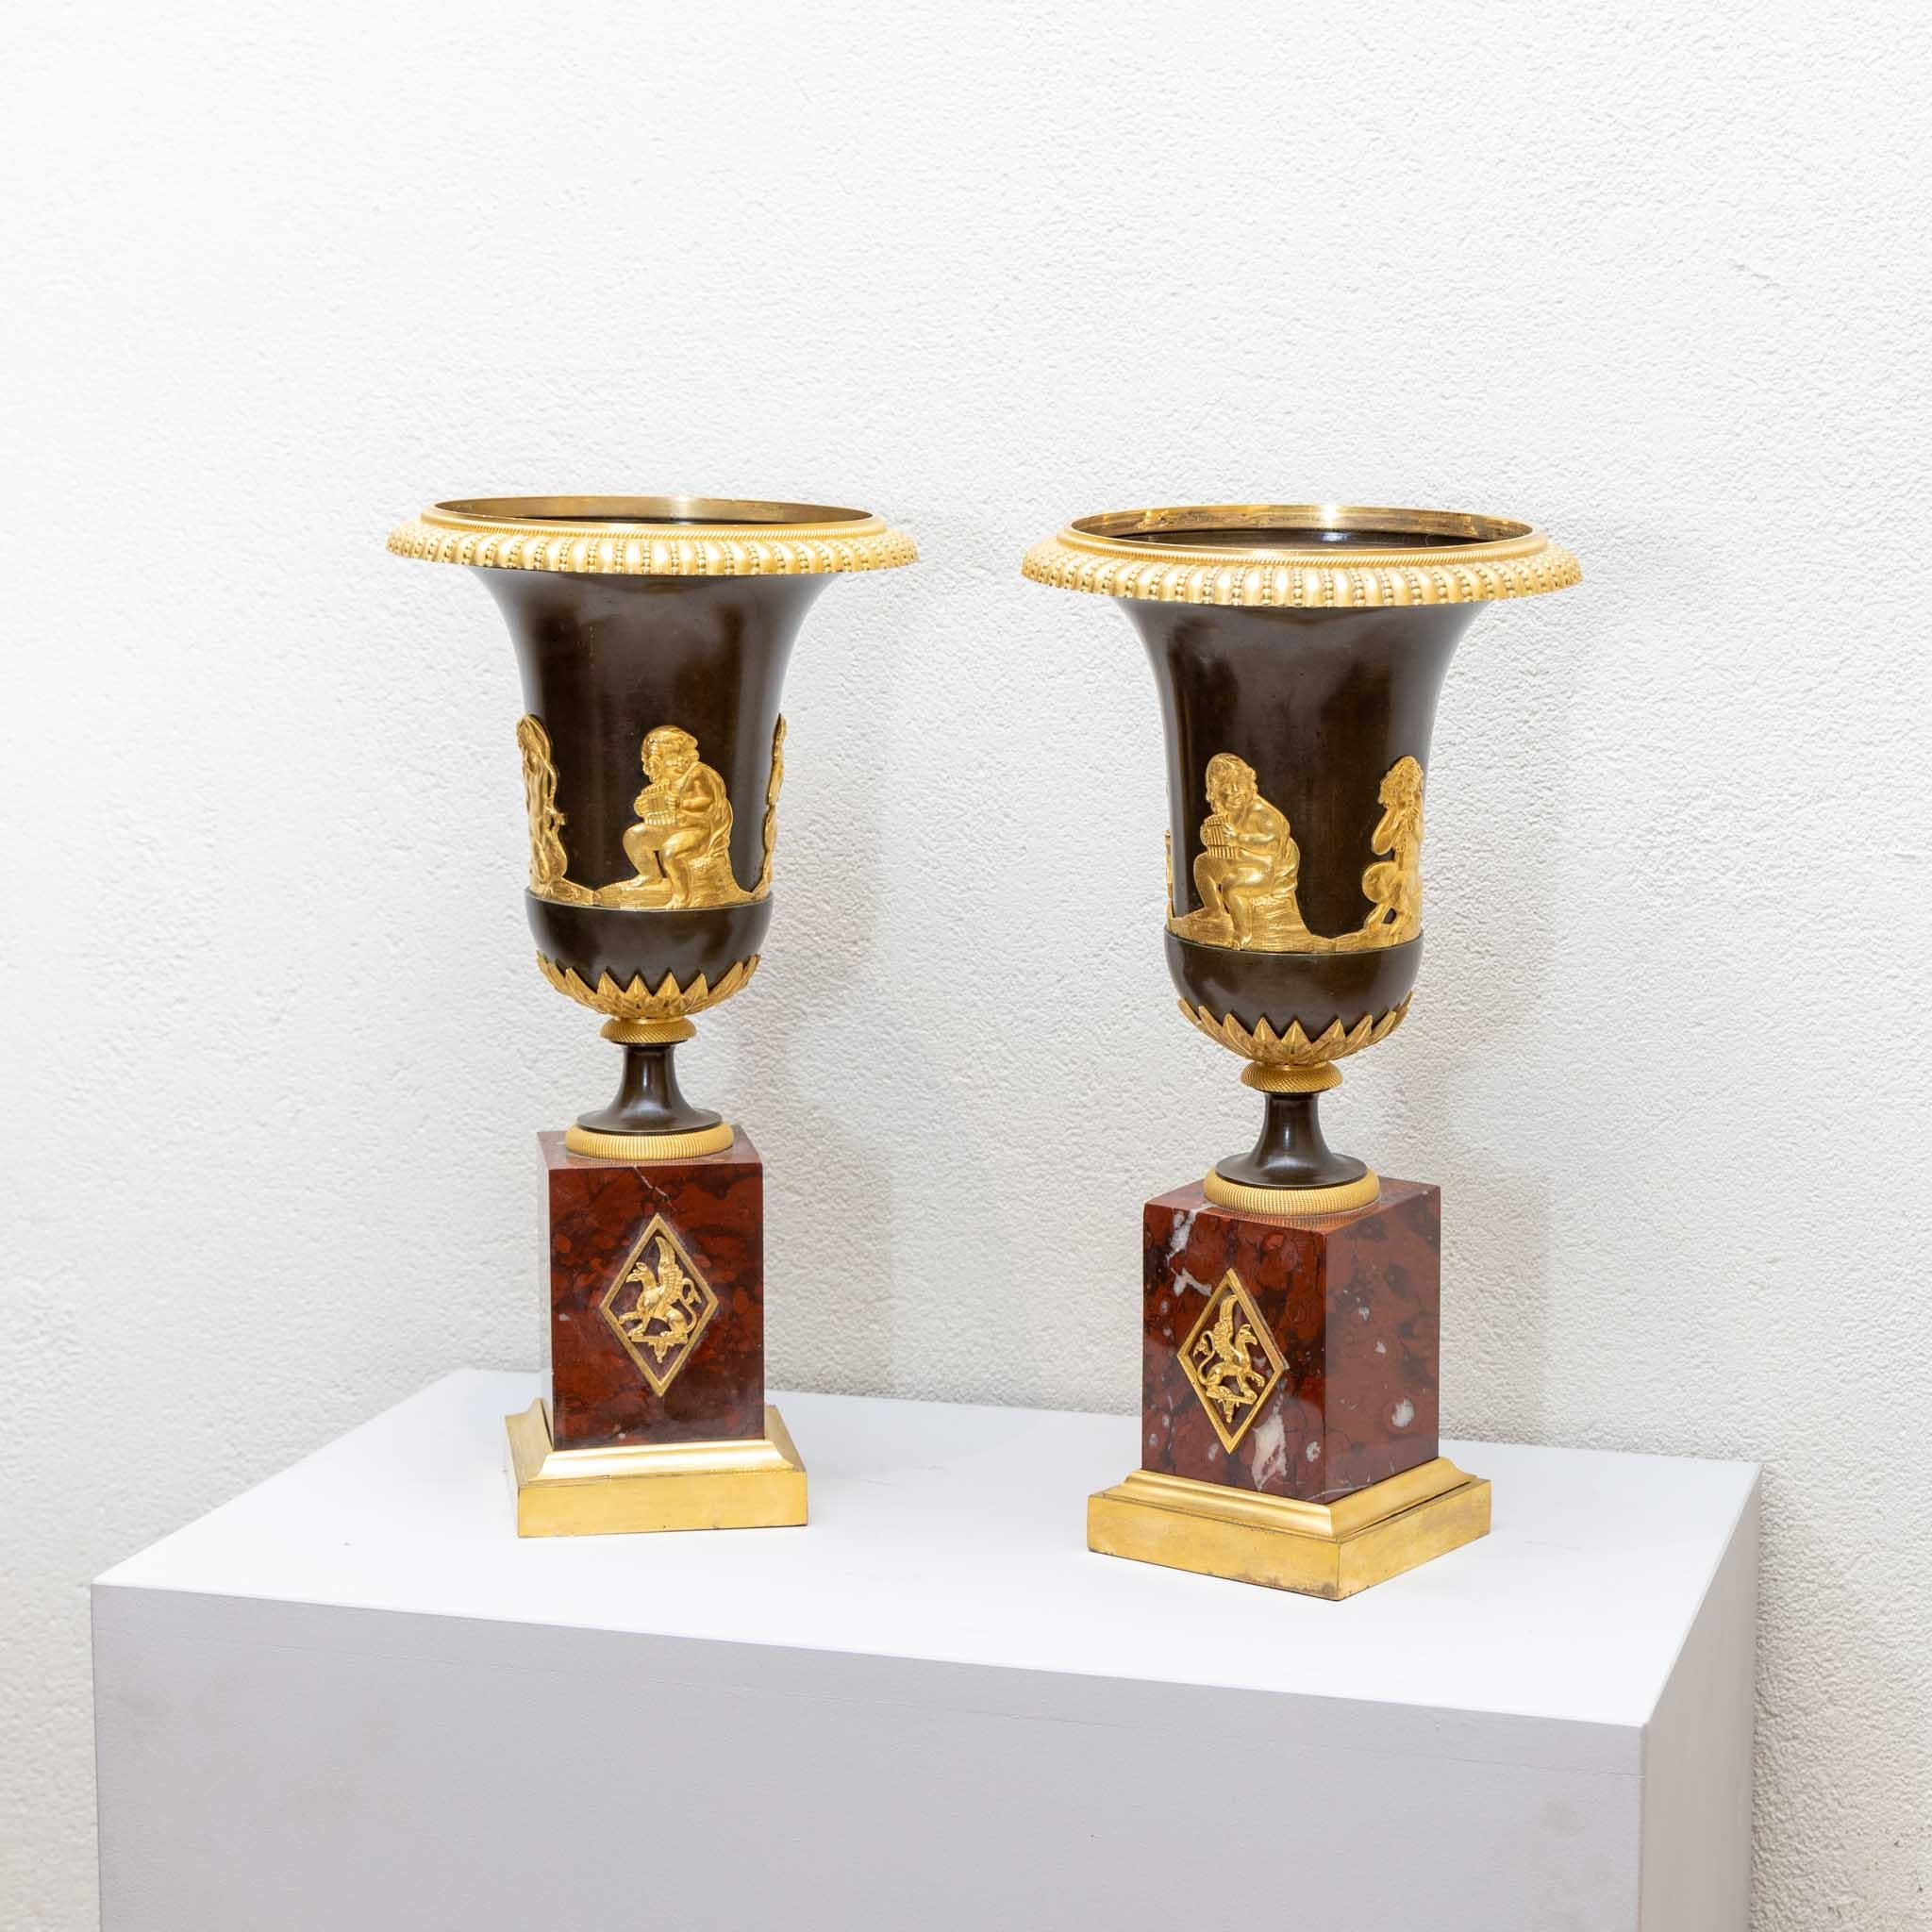 Paire de vases Empire sur des socles en marbre rouge avec des ferrures en bronze doré au feu en forme de petits satyres et de putti. (Dimensions du socle : 10 x 10 cm).